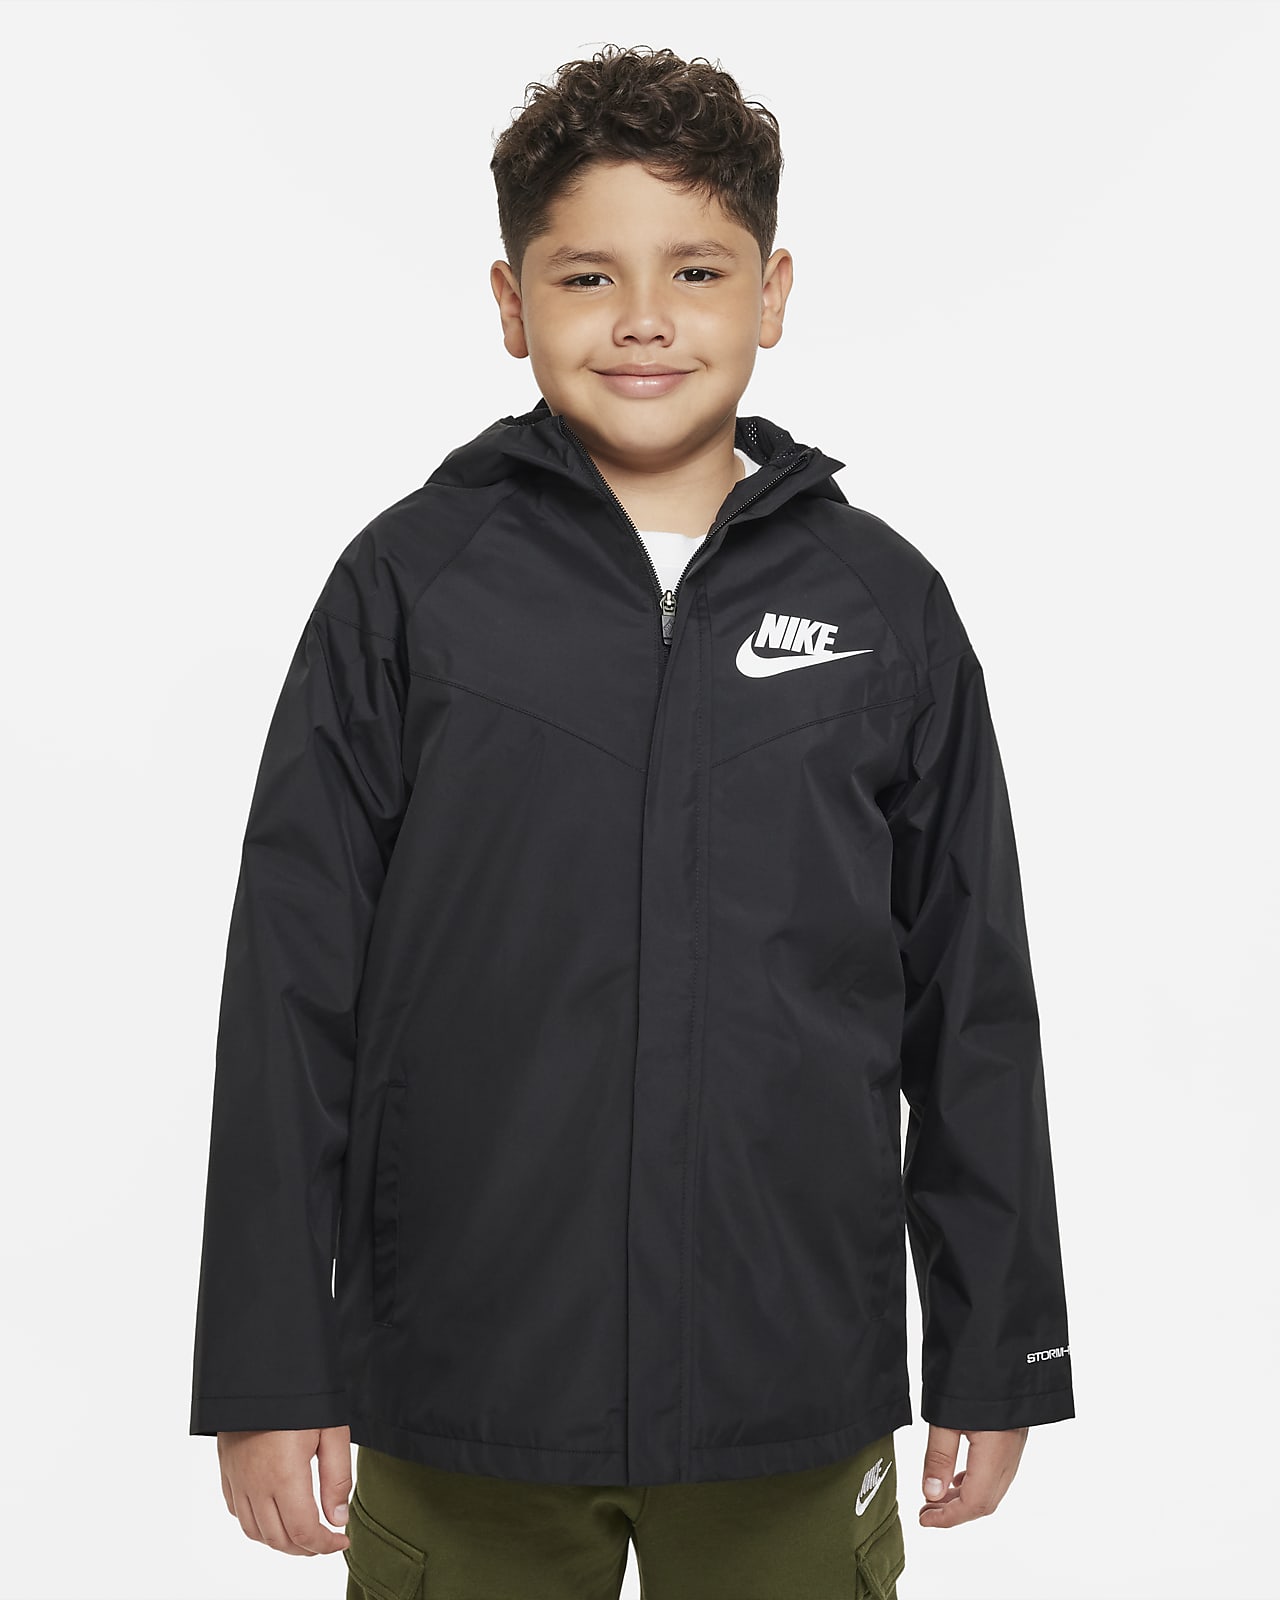 Toddler Boy Nike Puffer Jacket, Toddler Boy's, Size: 3T, Grey